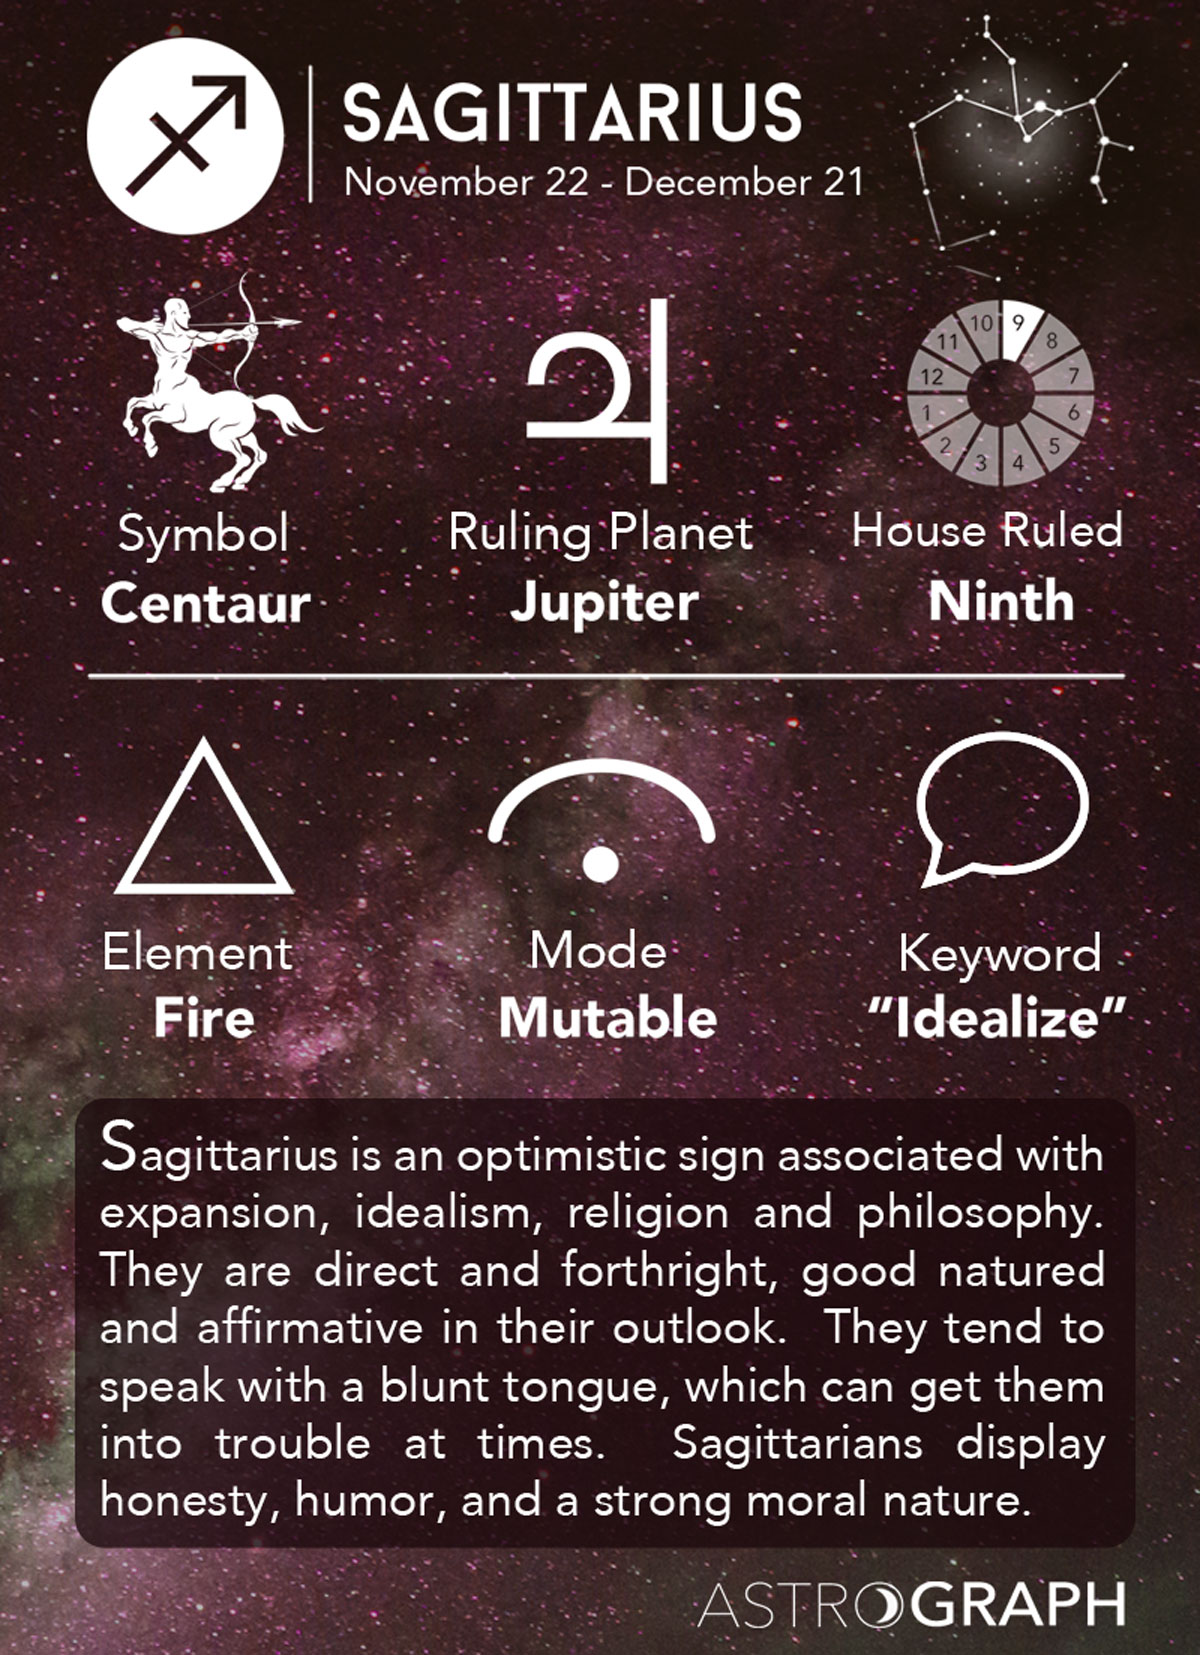 9. Sagittarius